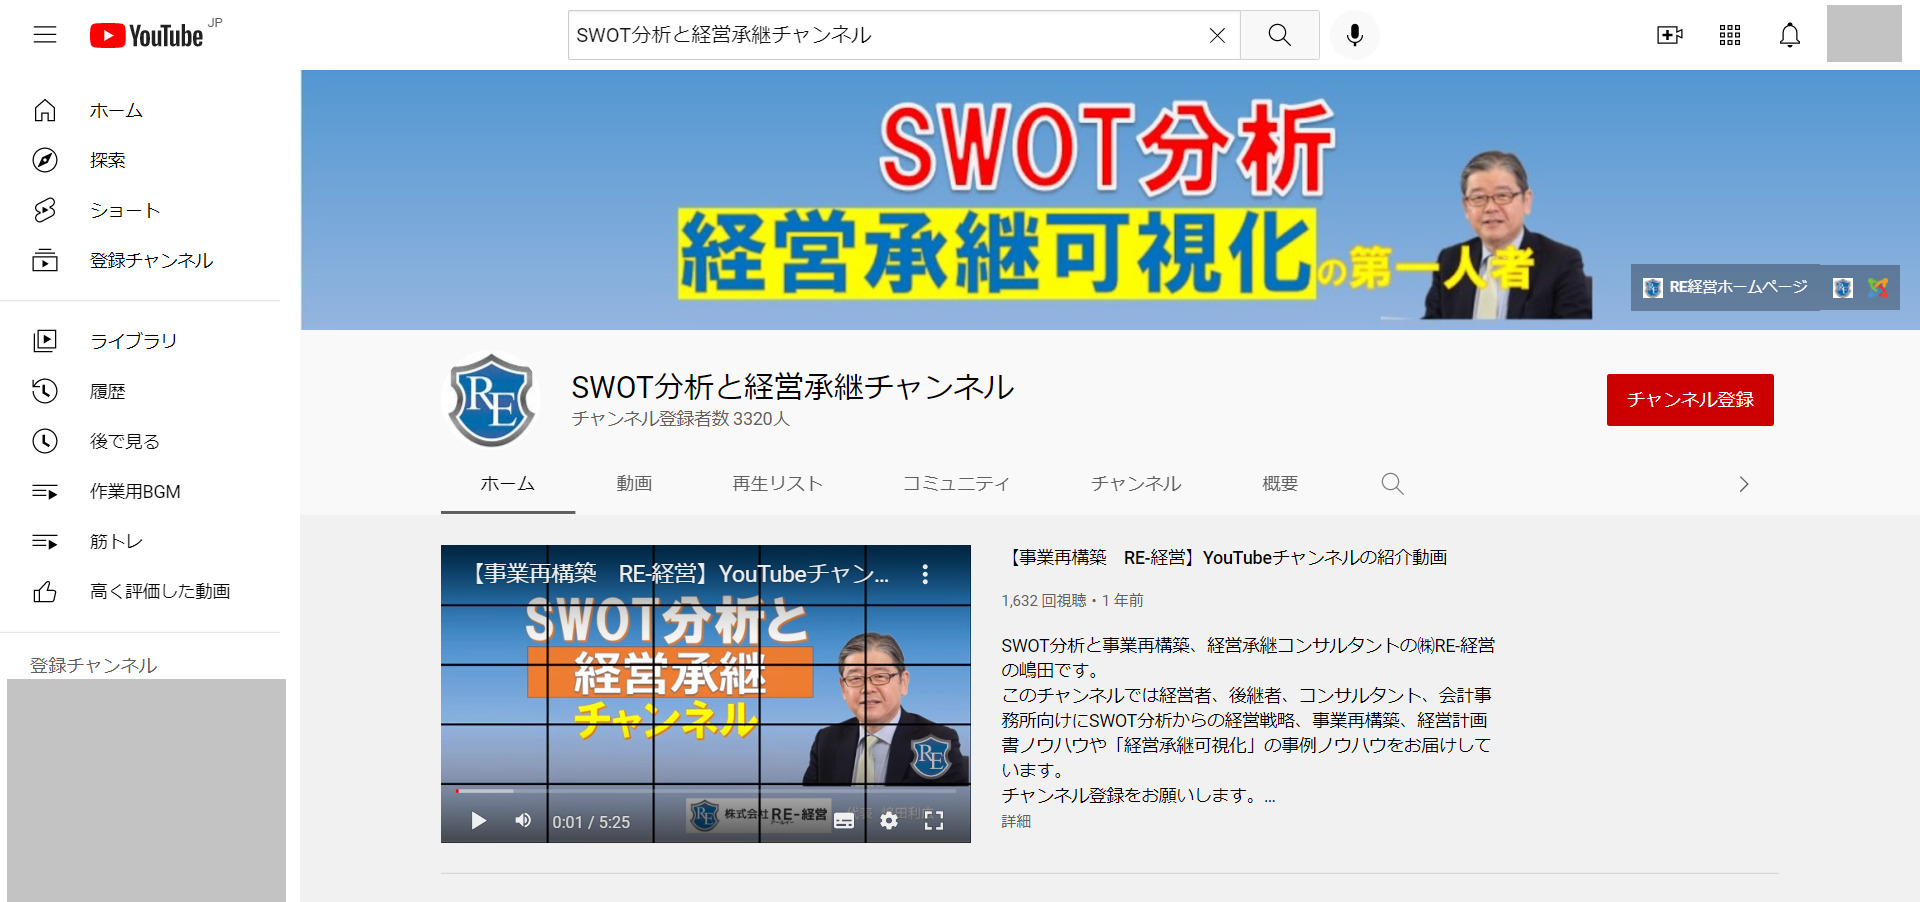 SWOT分析と経営承継チャンネル